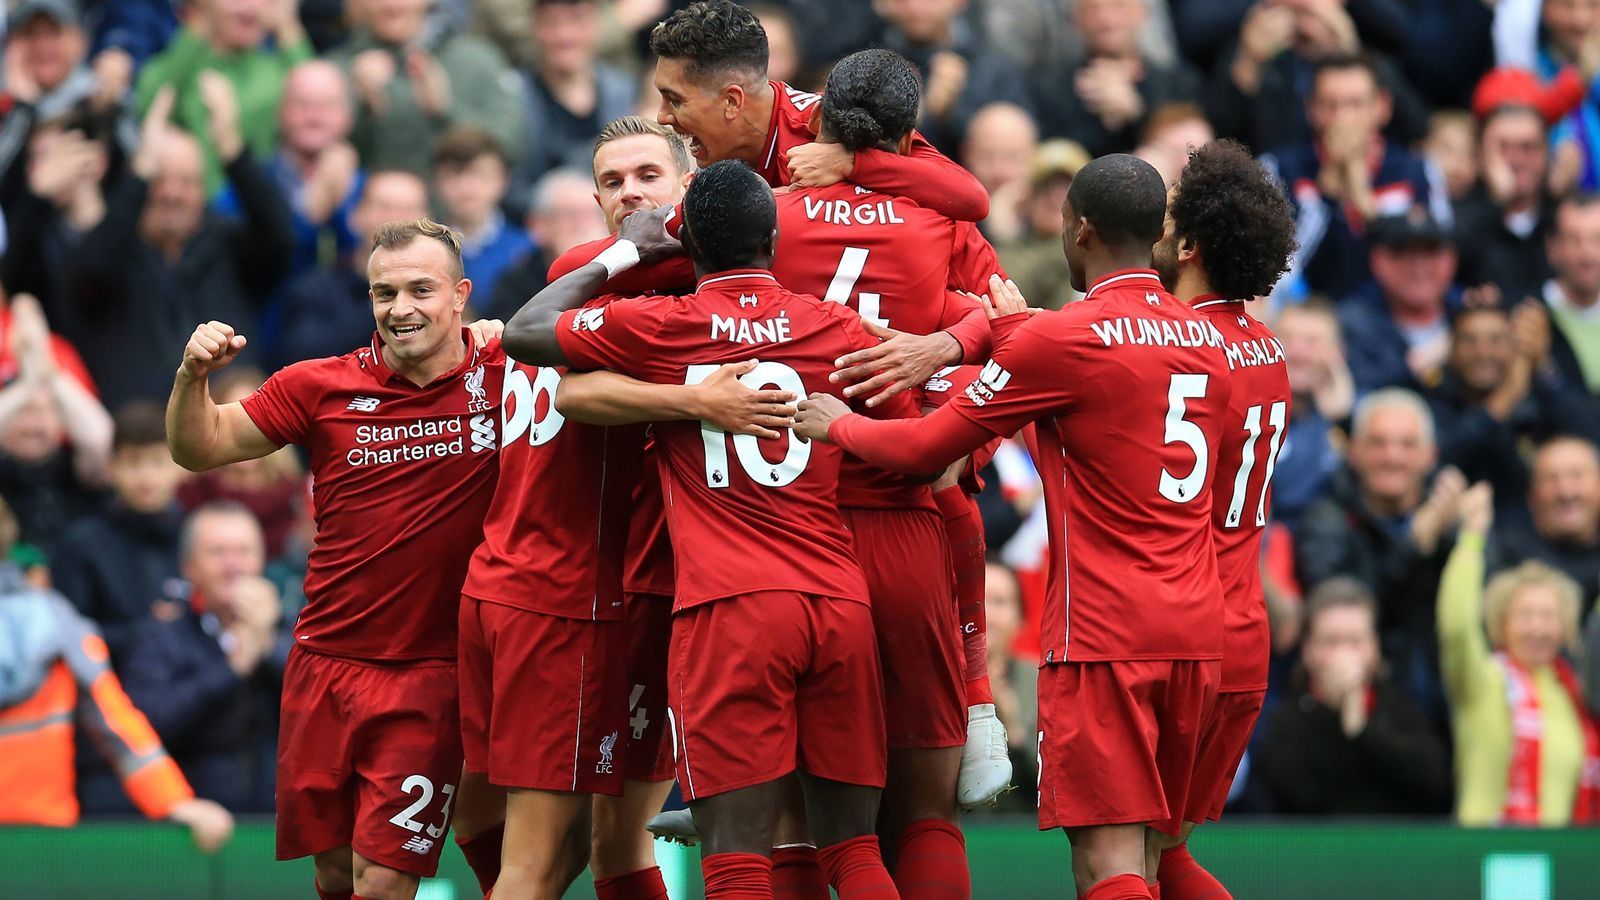 
                <strong>Liverpools Rekordstart in der Premier League</strong><br>
                Jürgen Klopp hatte zu Saisonbeginn allen Grund zum Jubeln: Liverpool feierte am sechsten Spieltag den sechsten Liga-Sieg - ein souveränes 3:0 gegen Southampton. Sein Team war damit mit sieben Siegen wettbewerbsübergreifend in die neue Saison 2018/19 gestartet (auch in der Champions League konnte Liverpool sein erstes Spiel gewinnen). Das war ein Vereinsrekord.
              